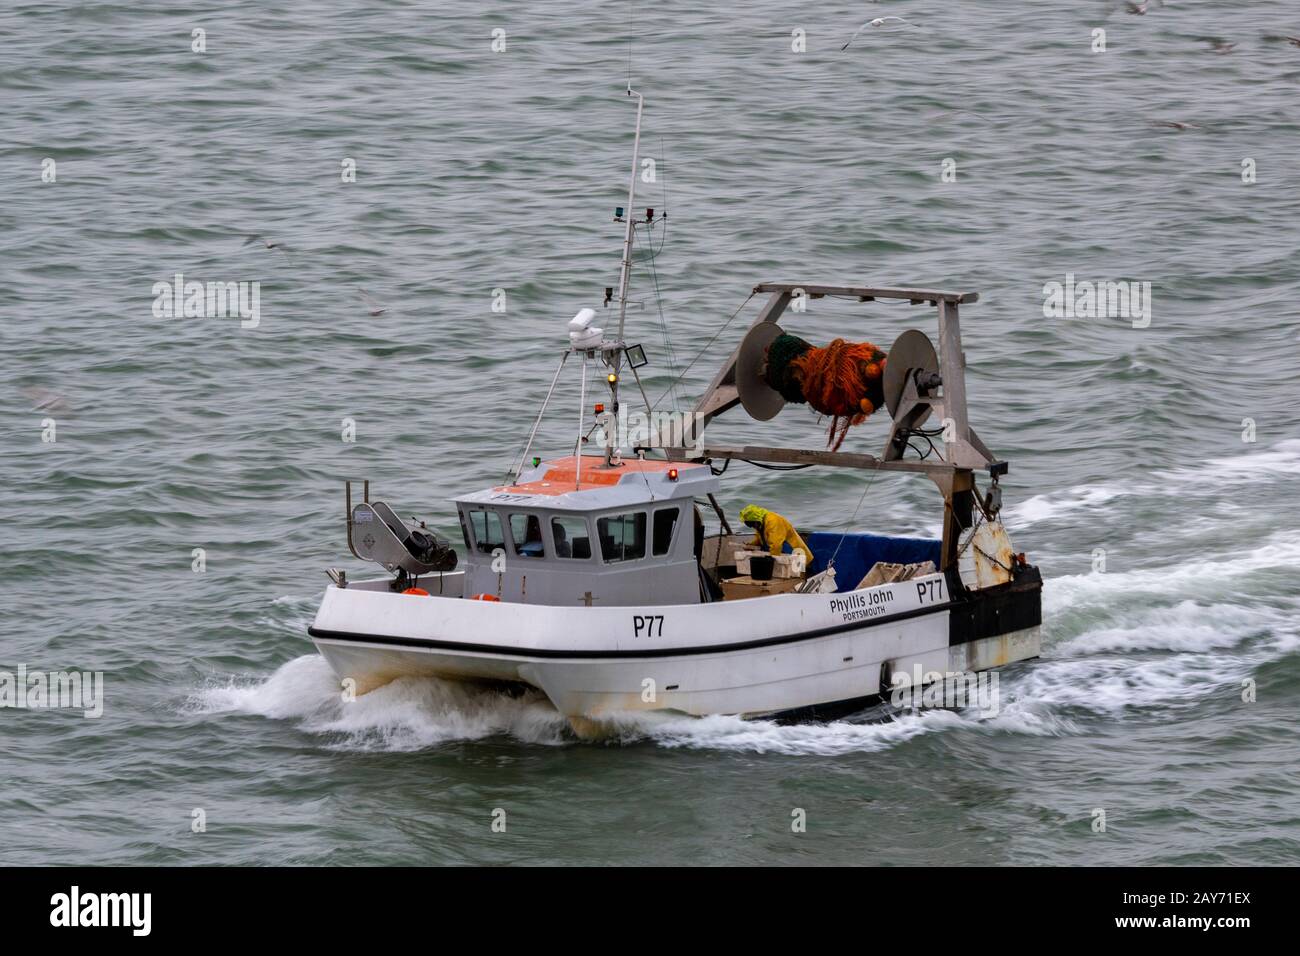 Ein Boot zum Fischfang von Krebsen oder Schalentieren auf See, das den Fang aussortiert. Stockfoto